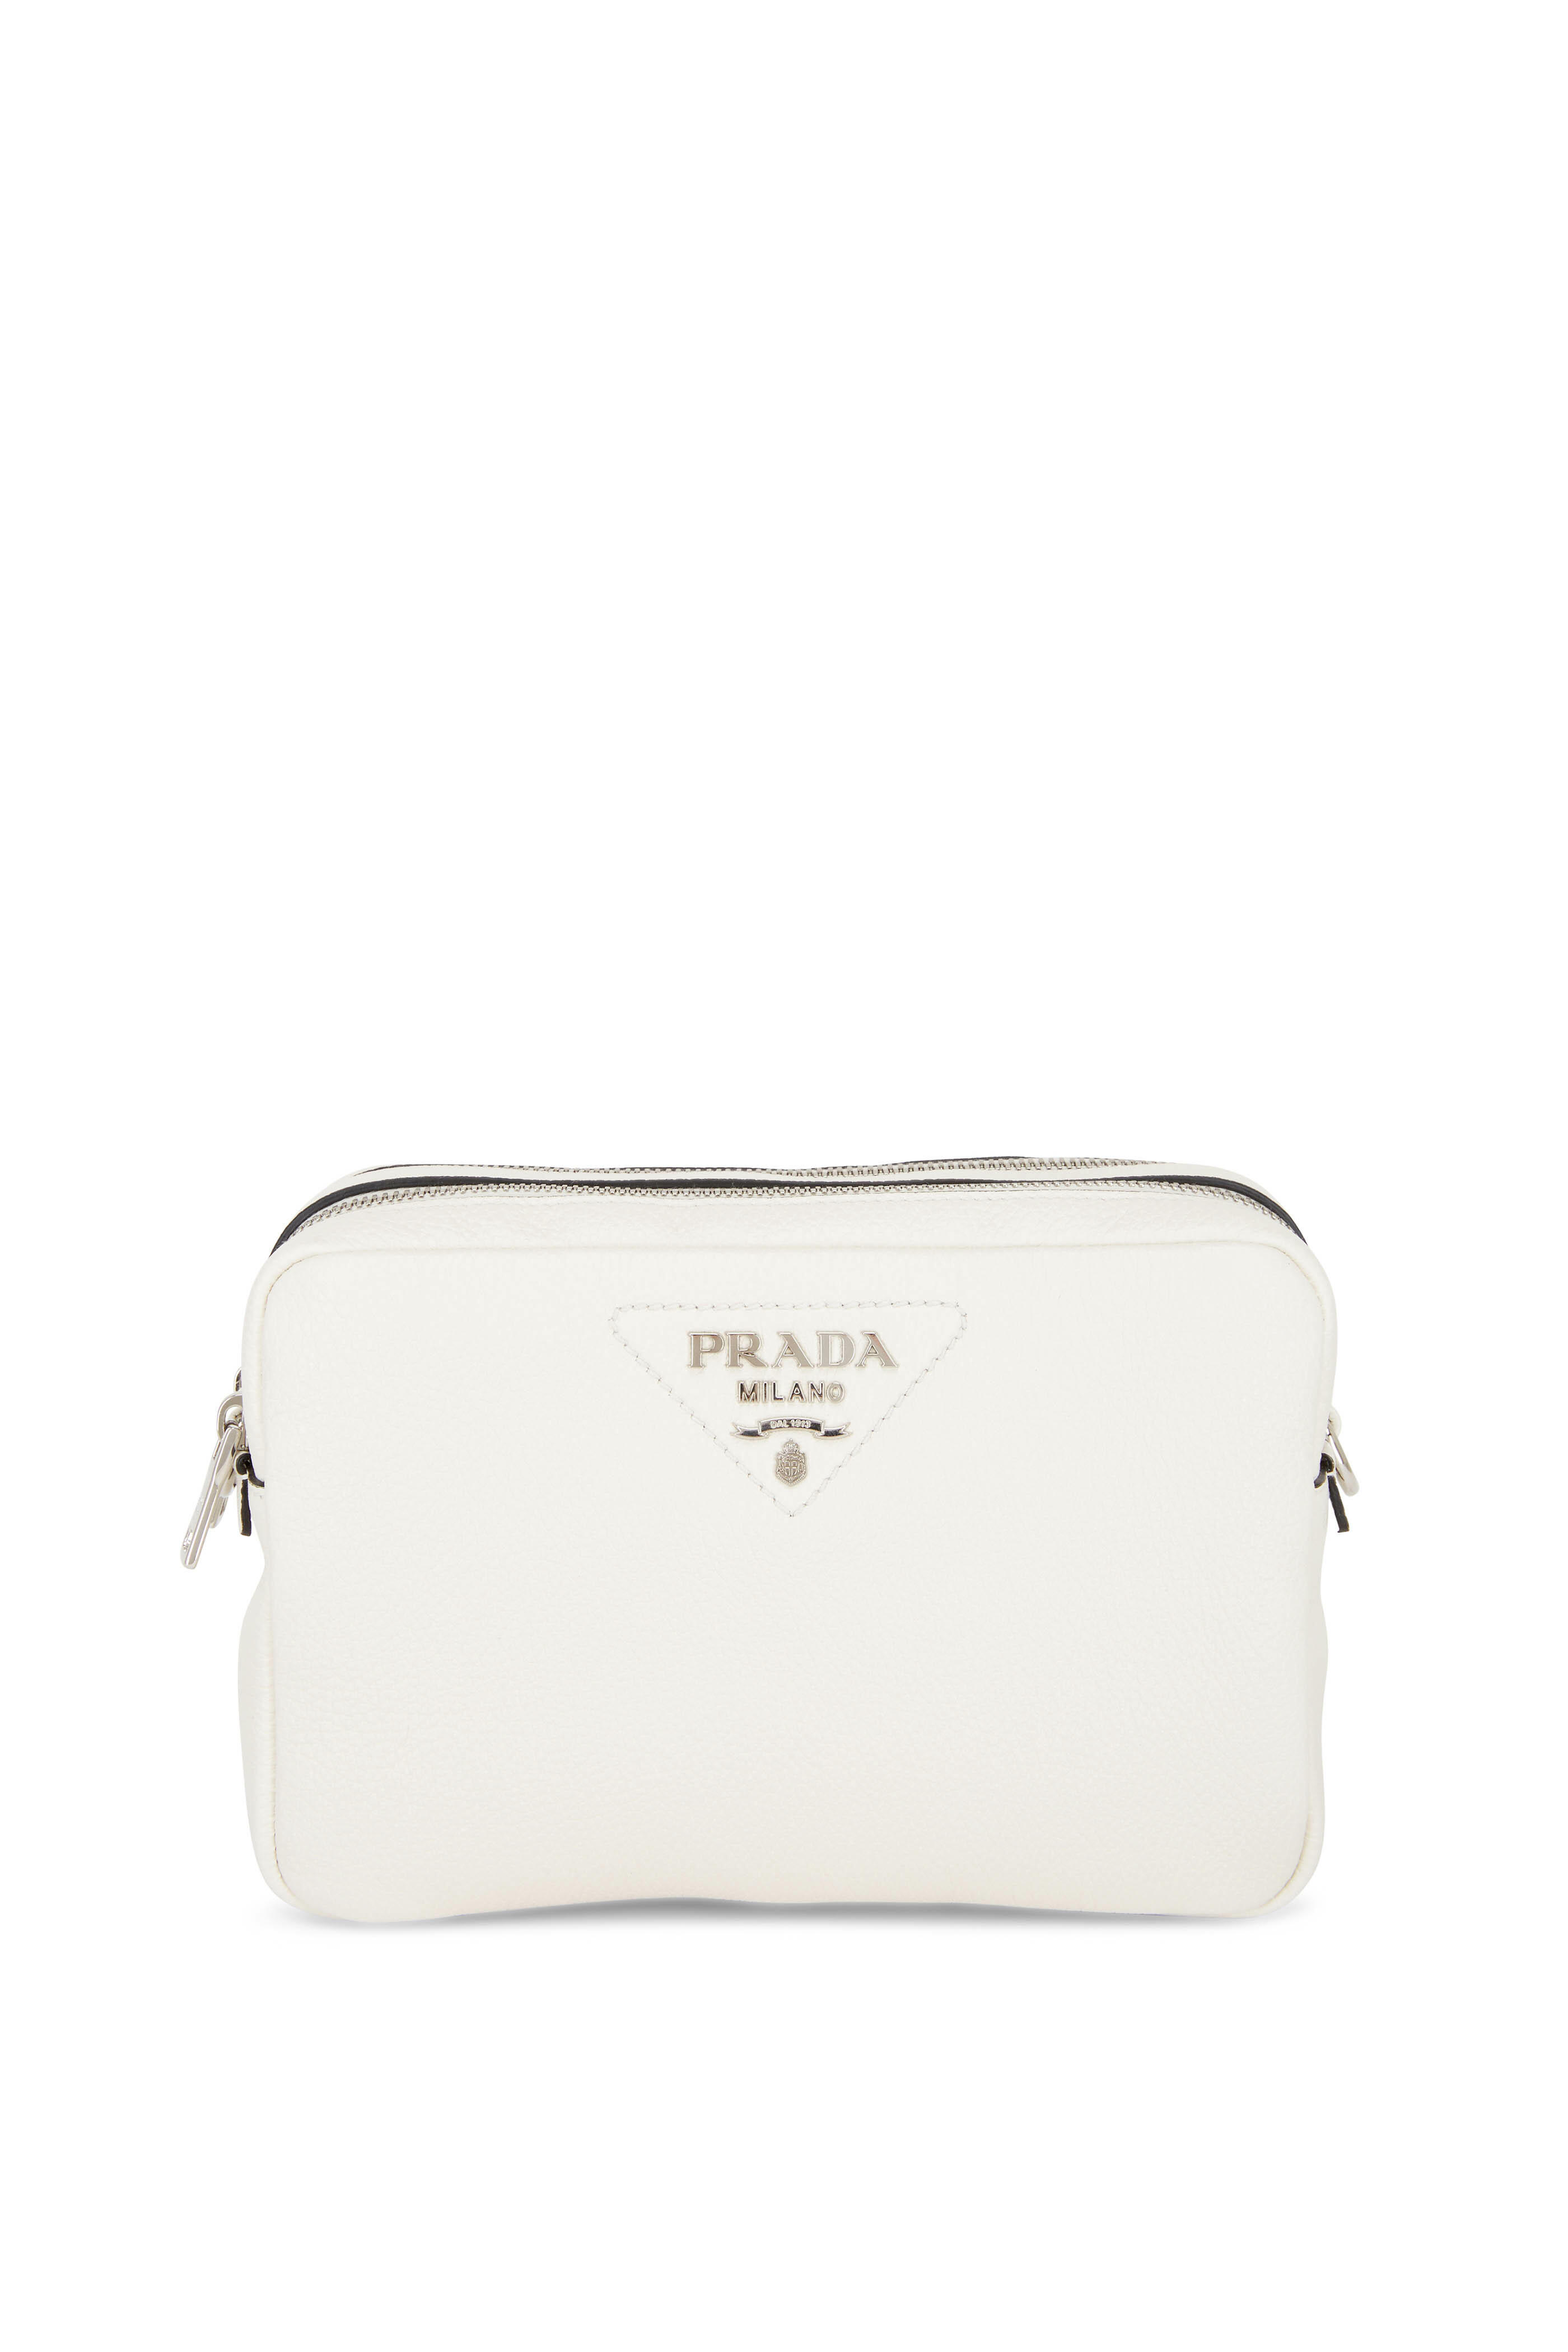 Prada - Flou White Leather Top Zip Camera Bag | Mitchell Stores